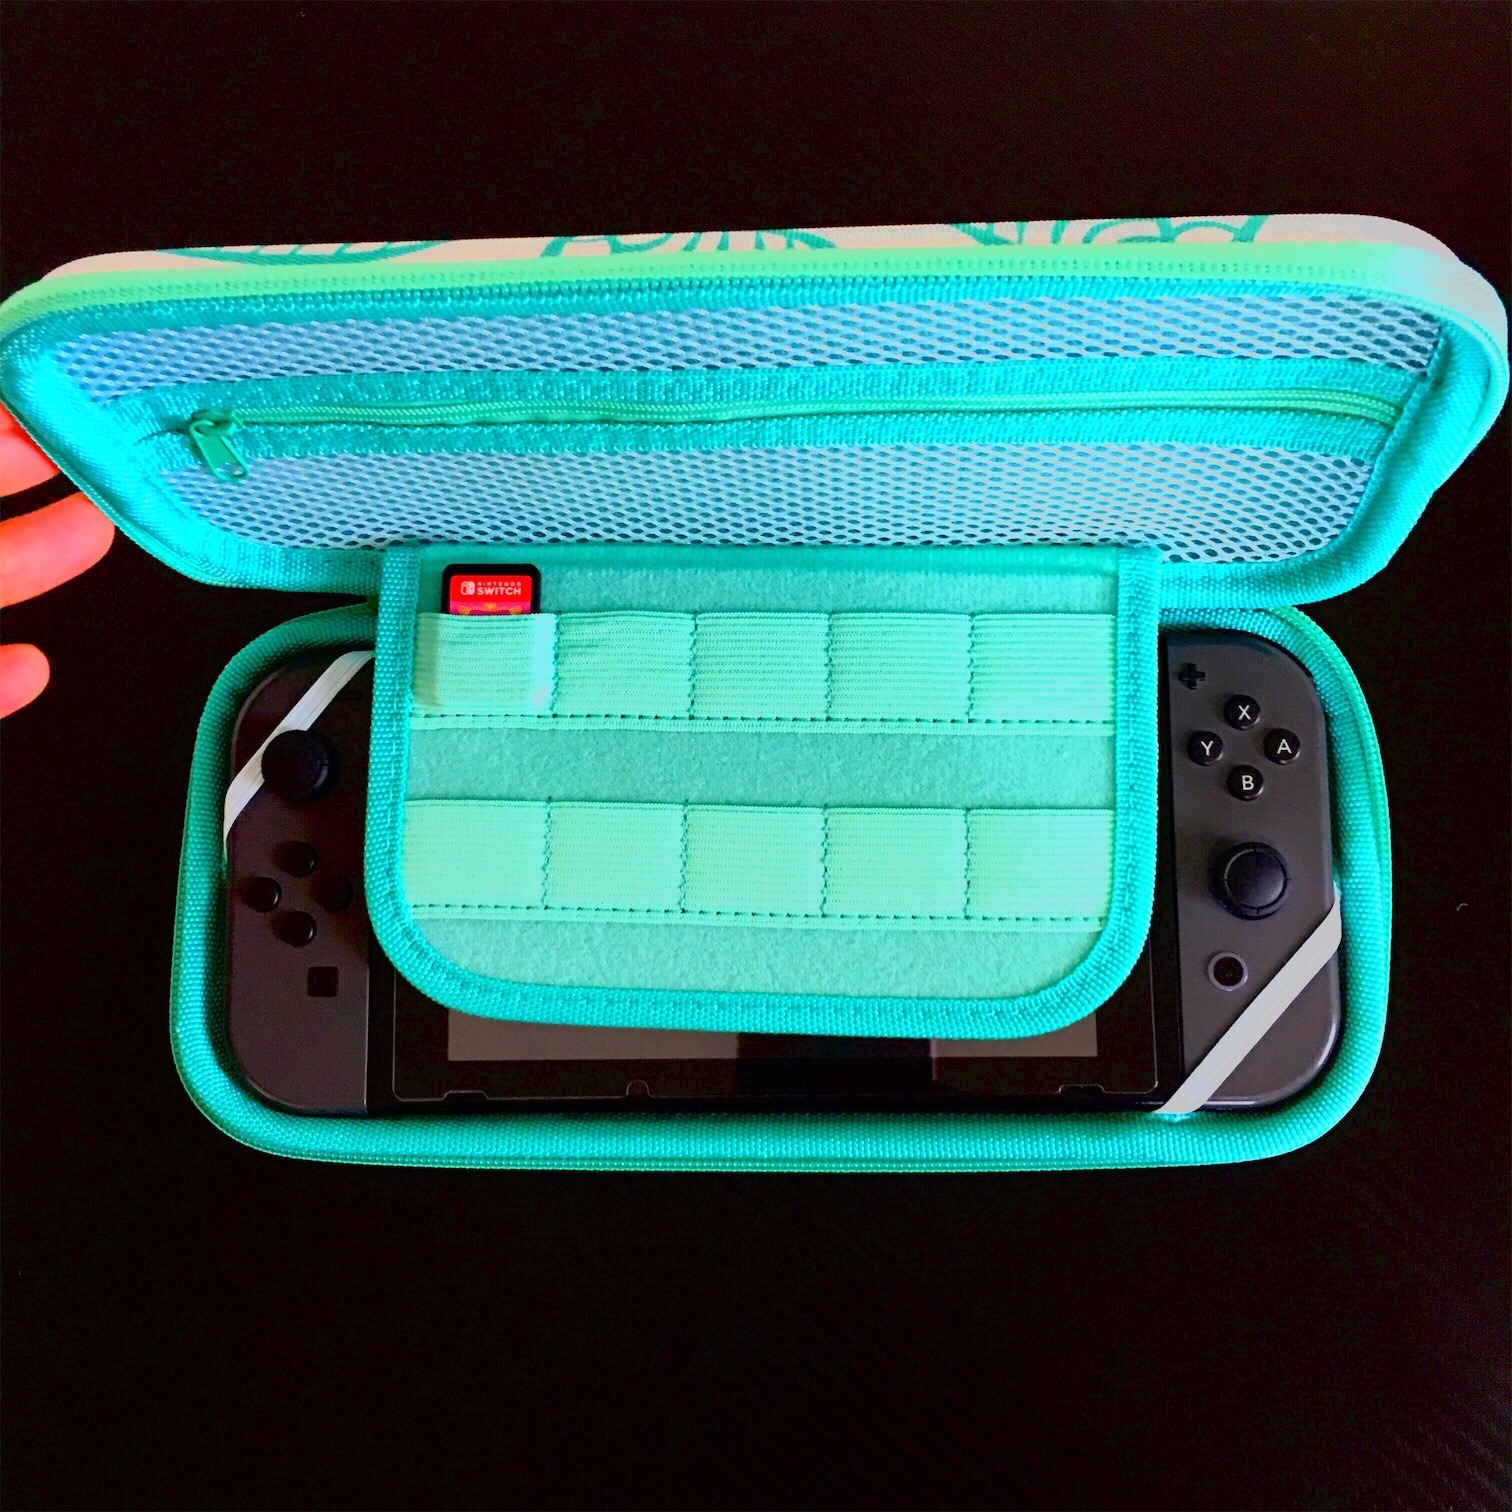 accesorios para electronica - Bulto Protector para Nintendo Switch  2